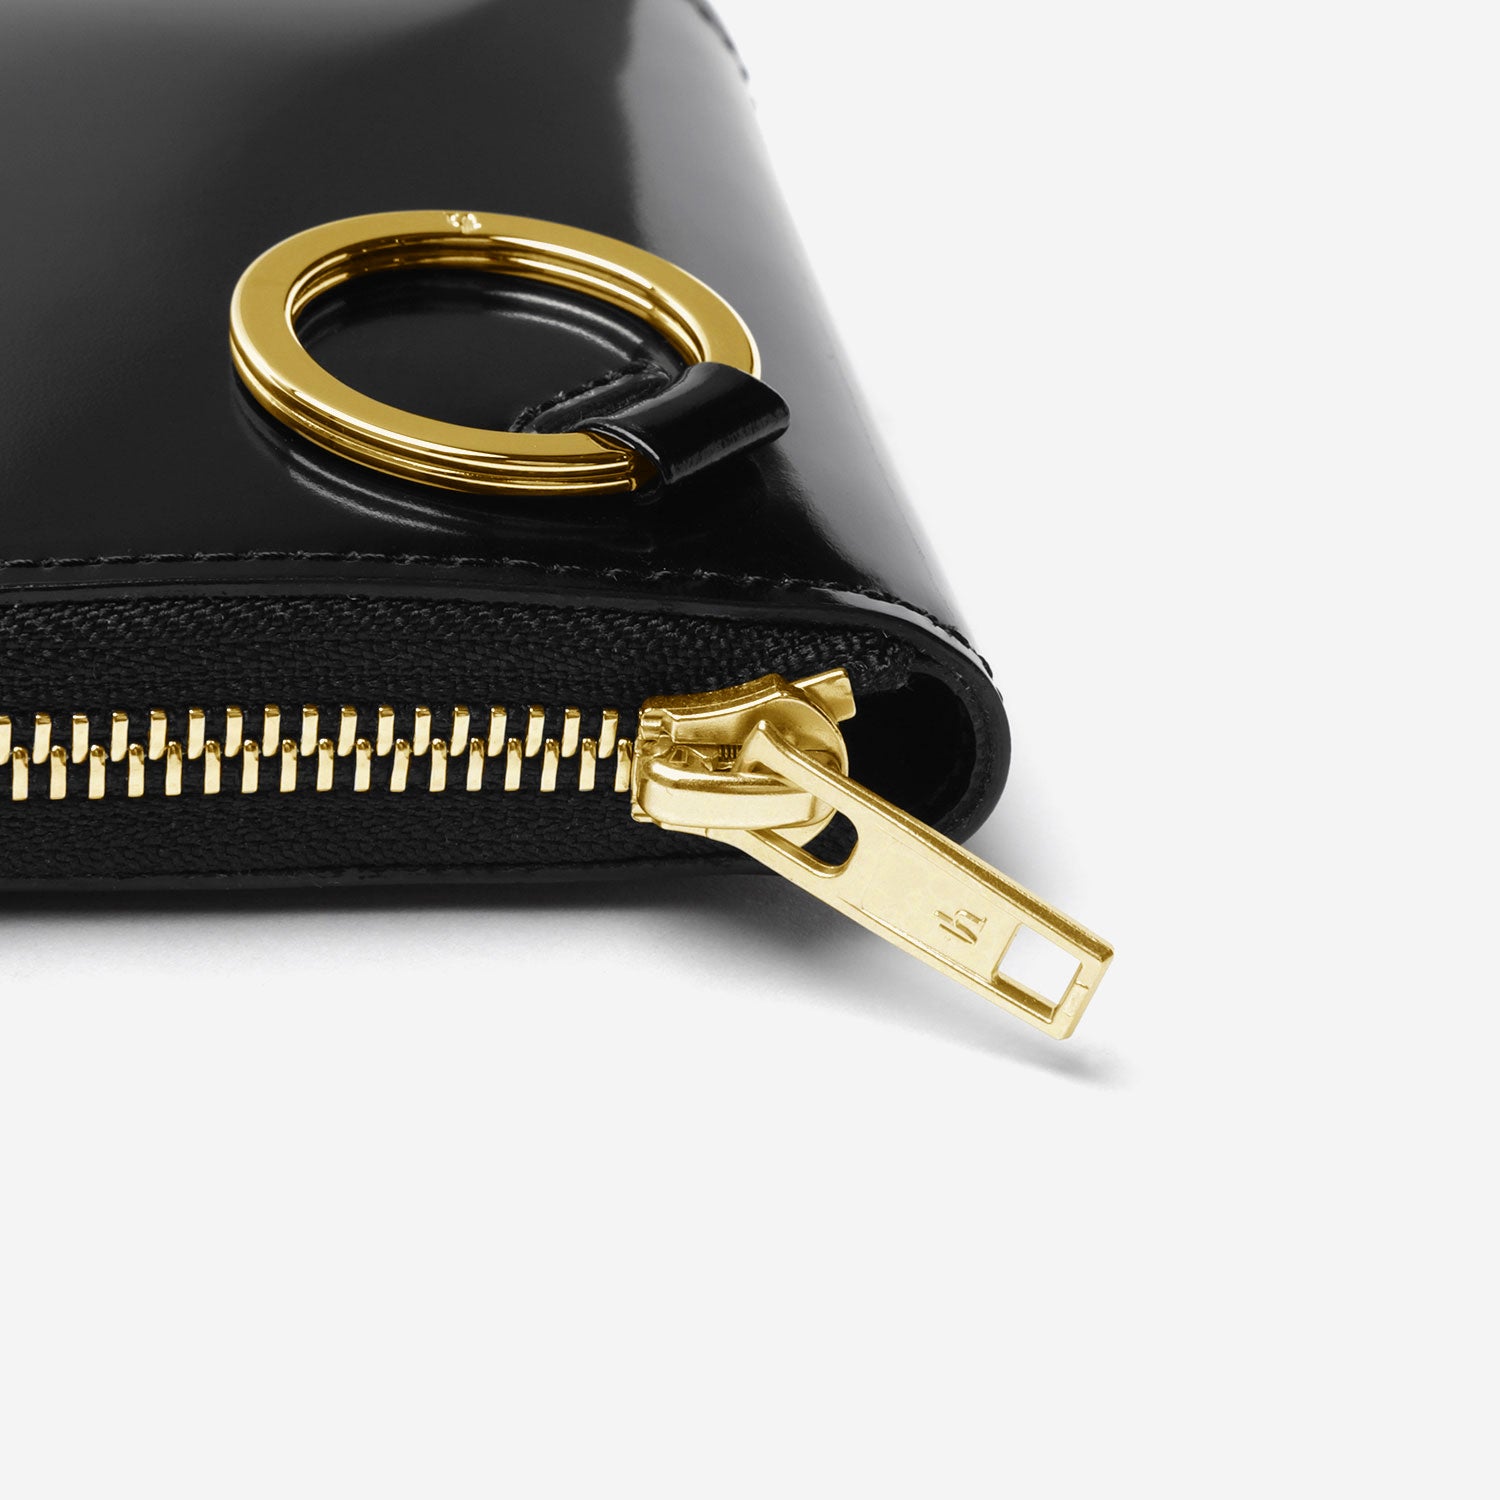 Zip Around Wallet / black × gold